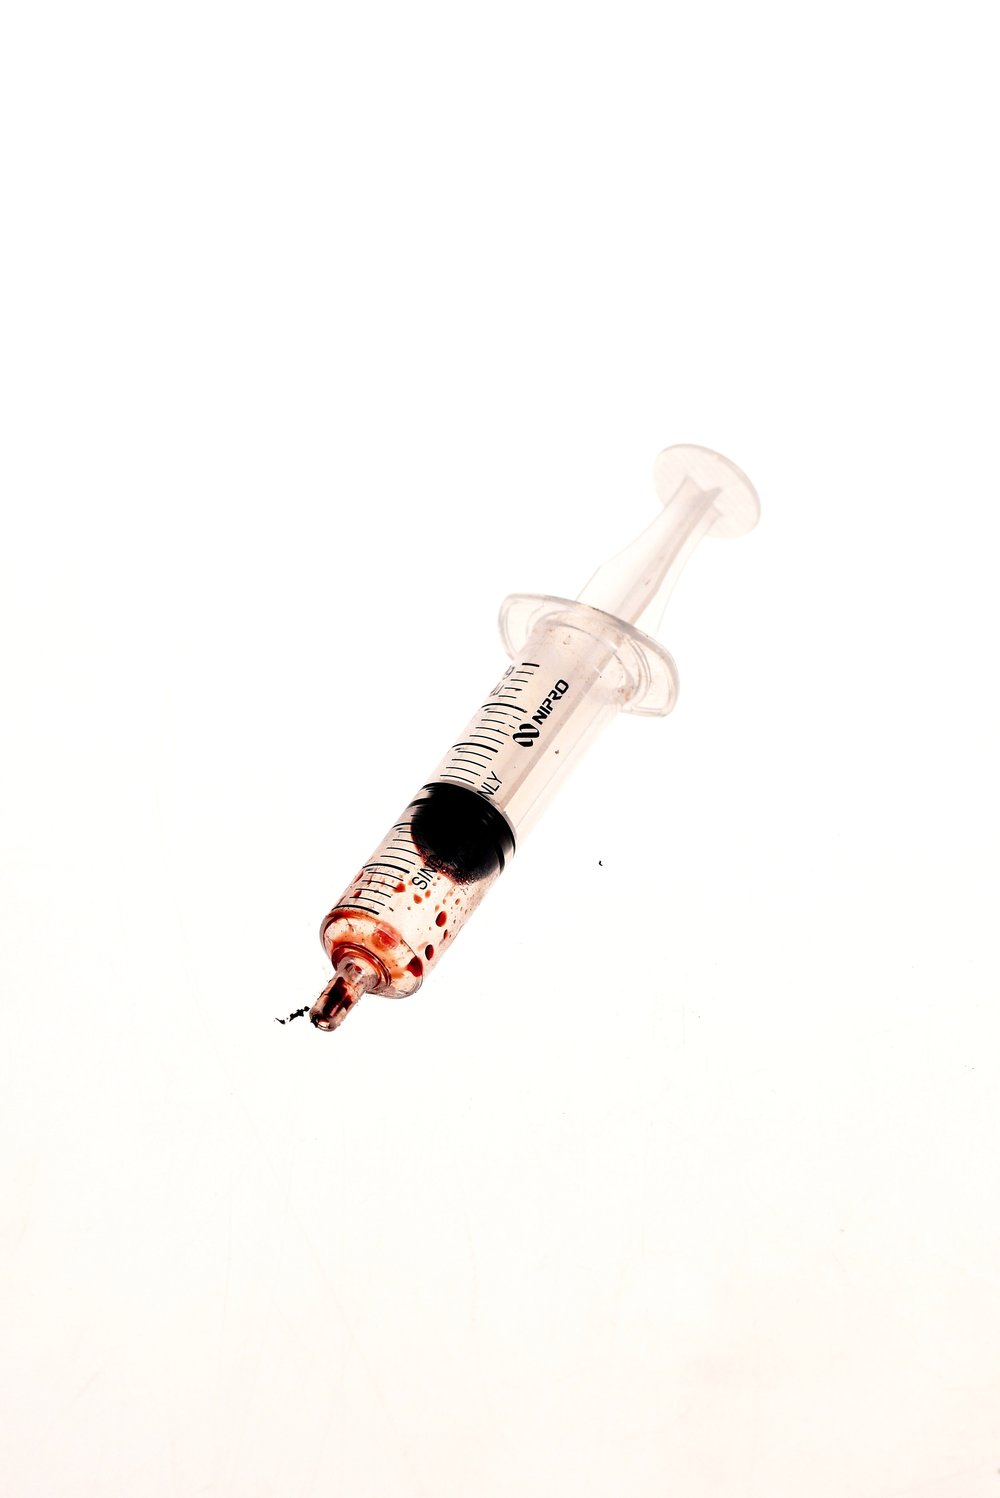 Bloody syringe